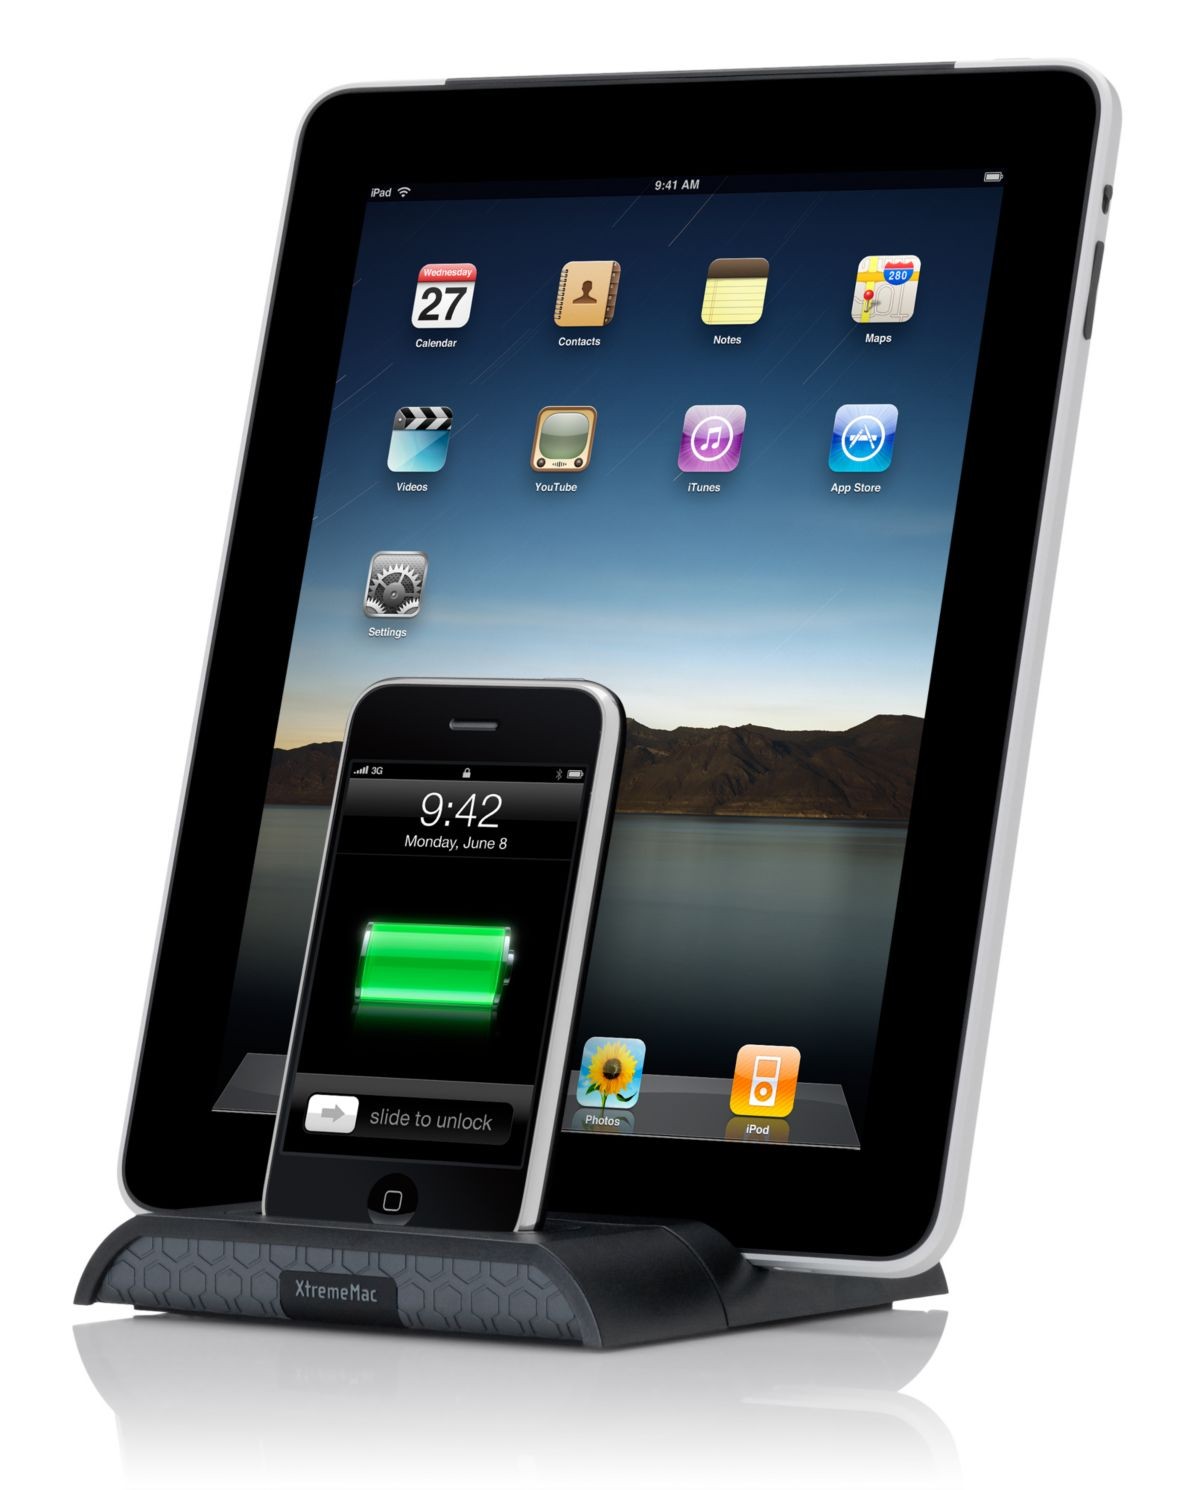 XtremeMac 2.1 Amp Dobbelt Docking Station til iPhone, iPod & iPad - Sort